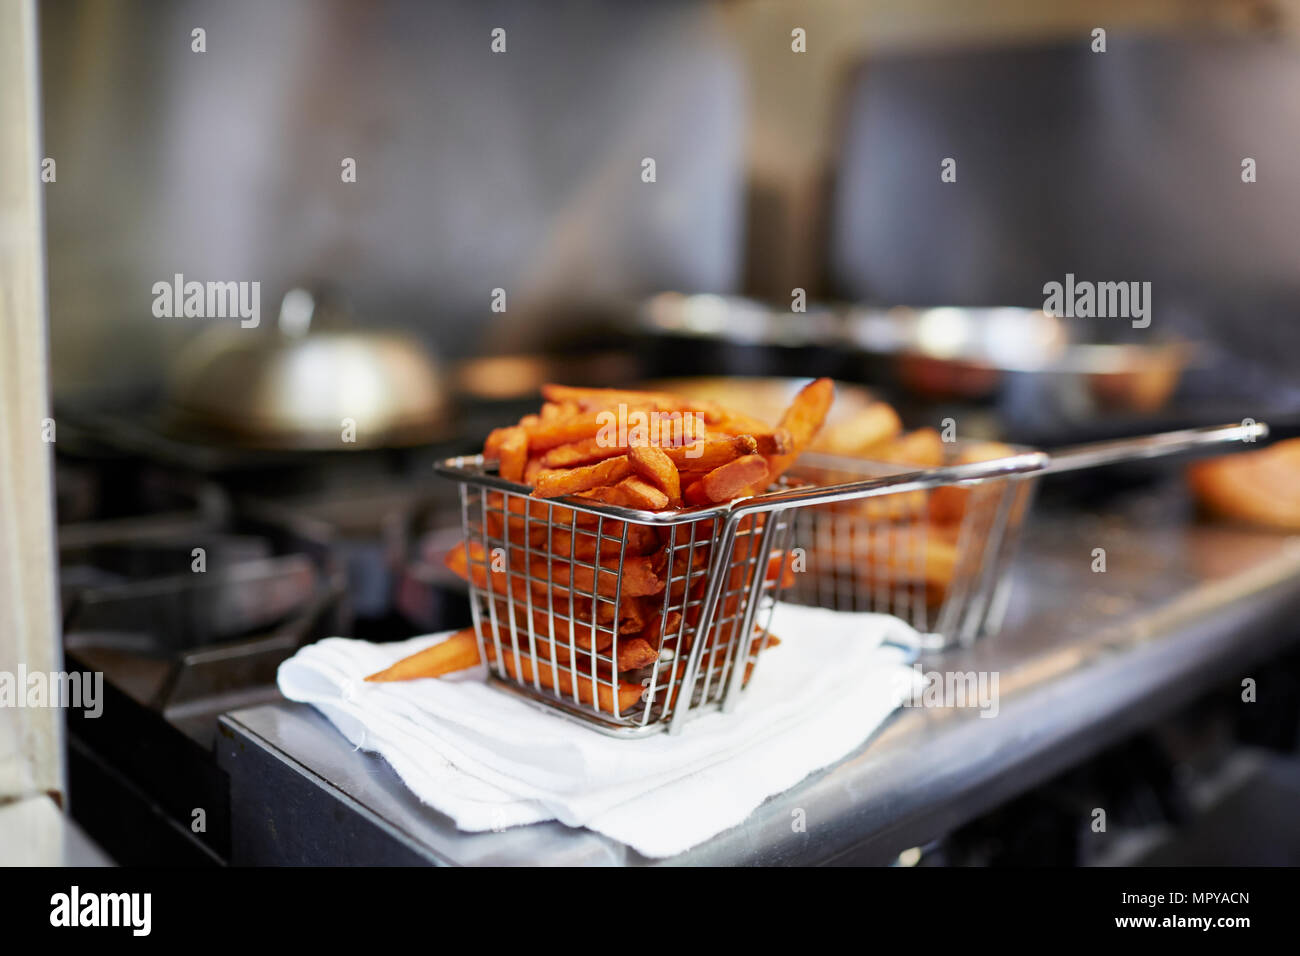 https://c8.alamy.com/compes/mpyacn/close-up-de-papas-fritas-en-freidora-cesta-en-la-cocina-mpyacn.jpg